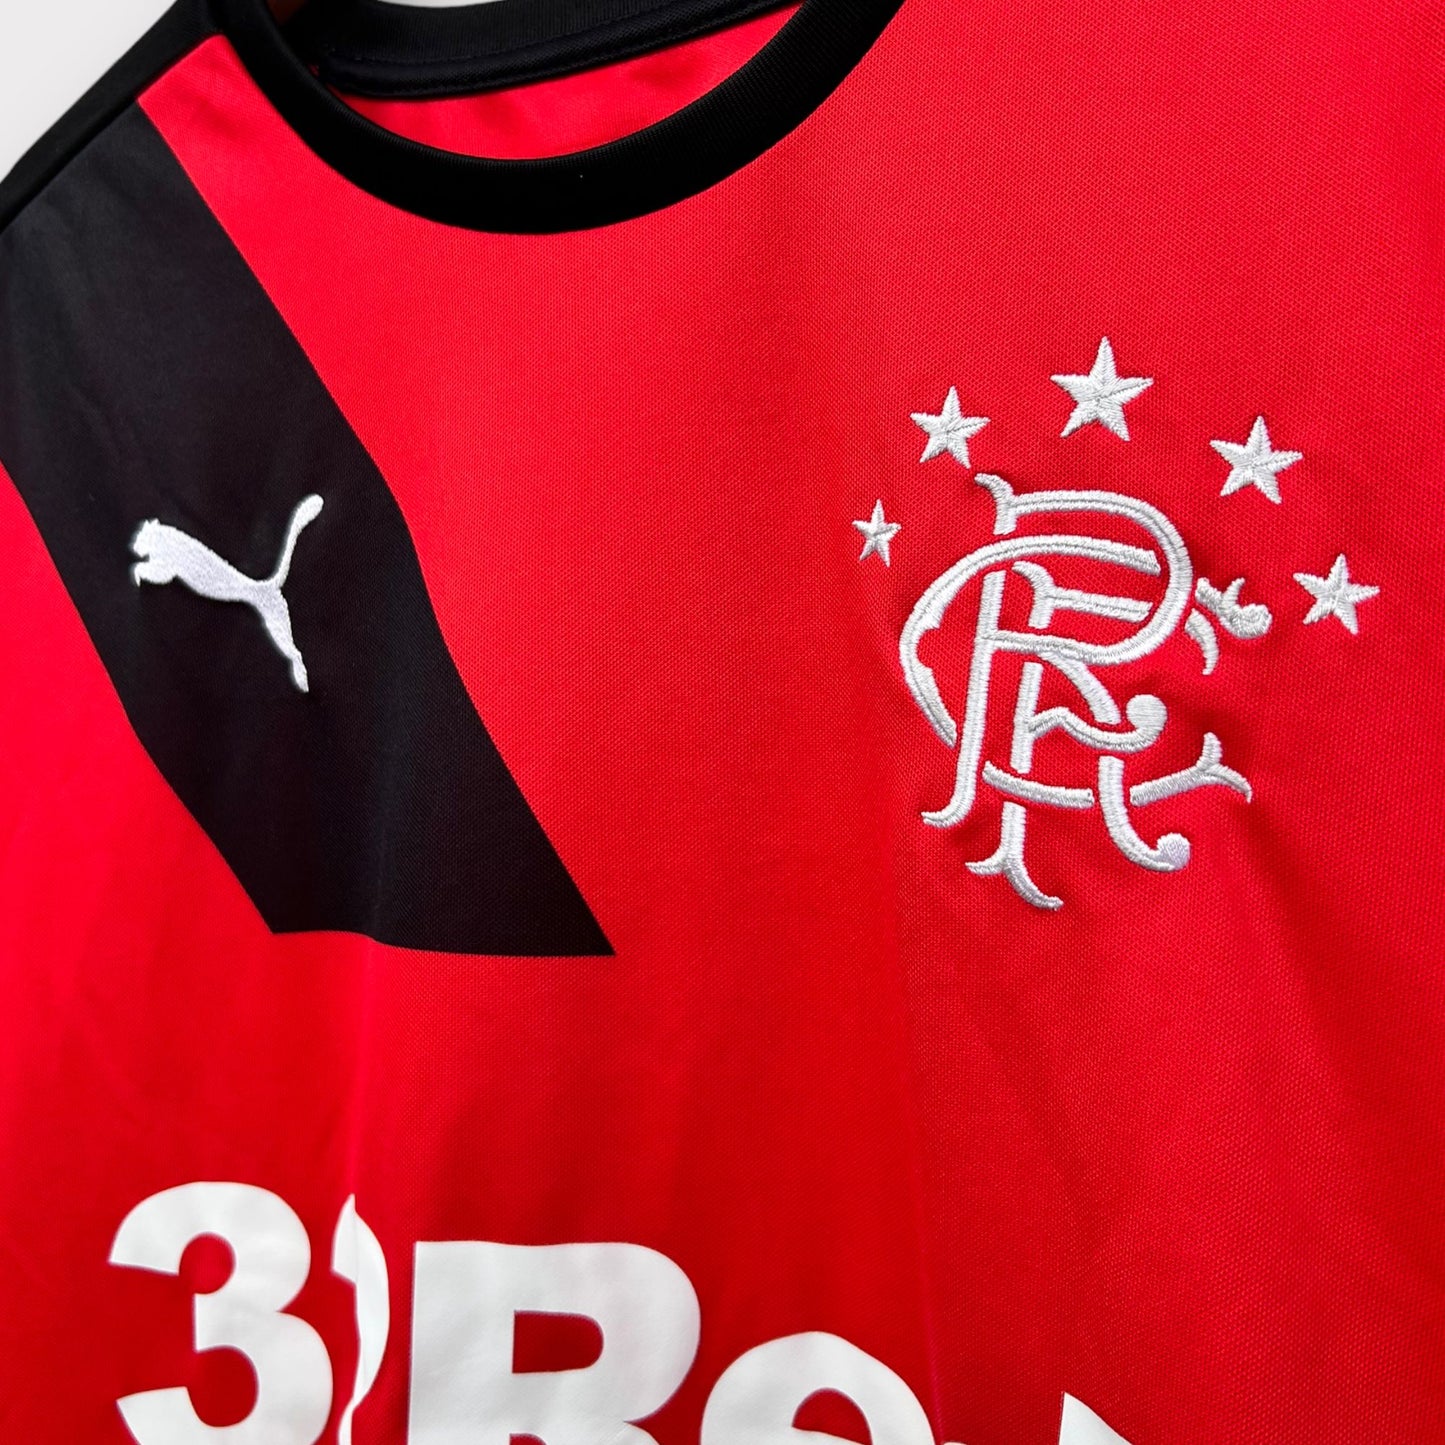 Rangers FC 2015/16 Away Shirt (M)